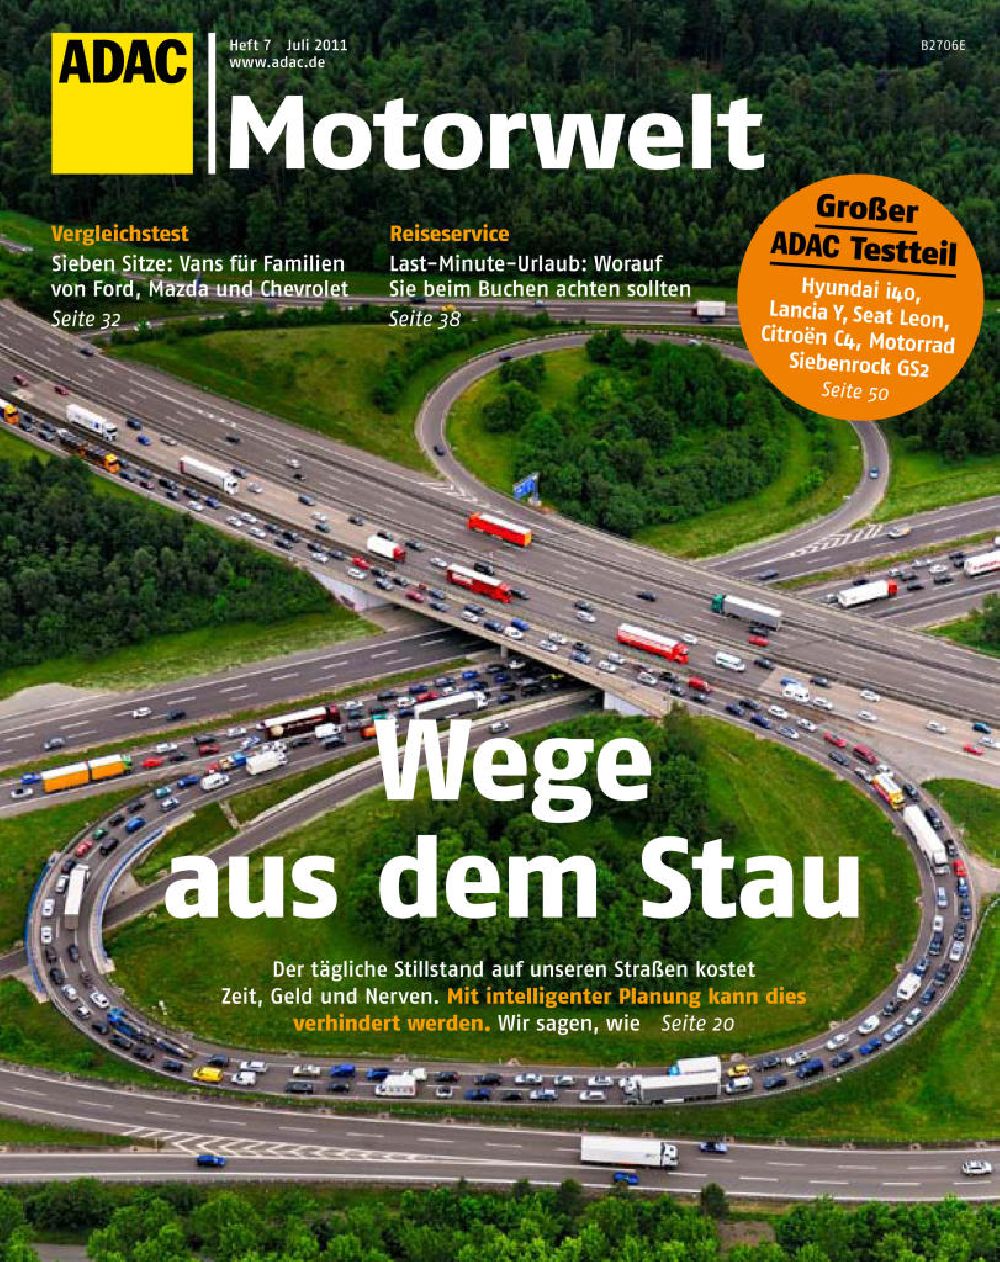 Stuttgart aus der Vogelperspektive: Luftbildverwendung Autobahnkreuz Stuttgart Titelbild ADAC Motorwelt 07 2011